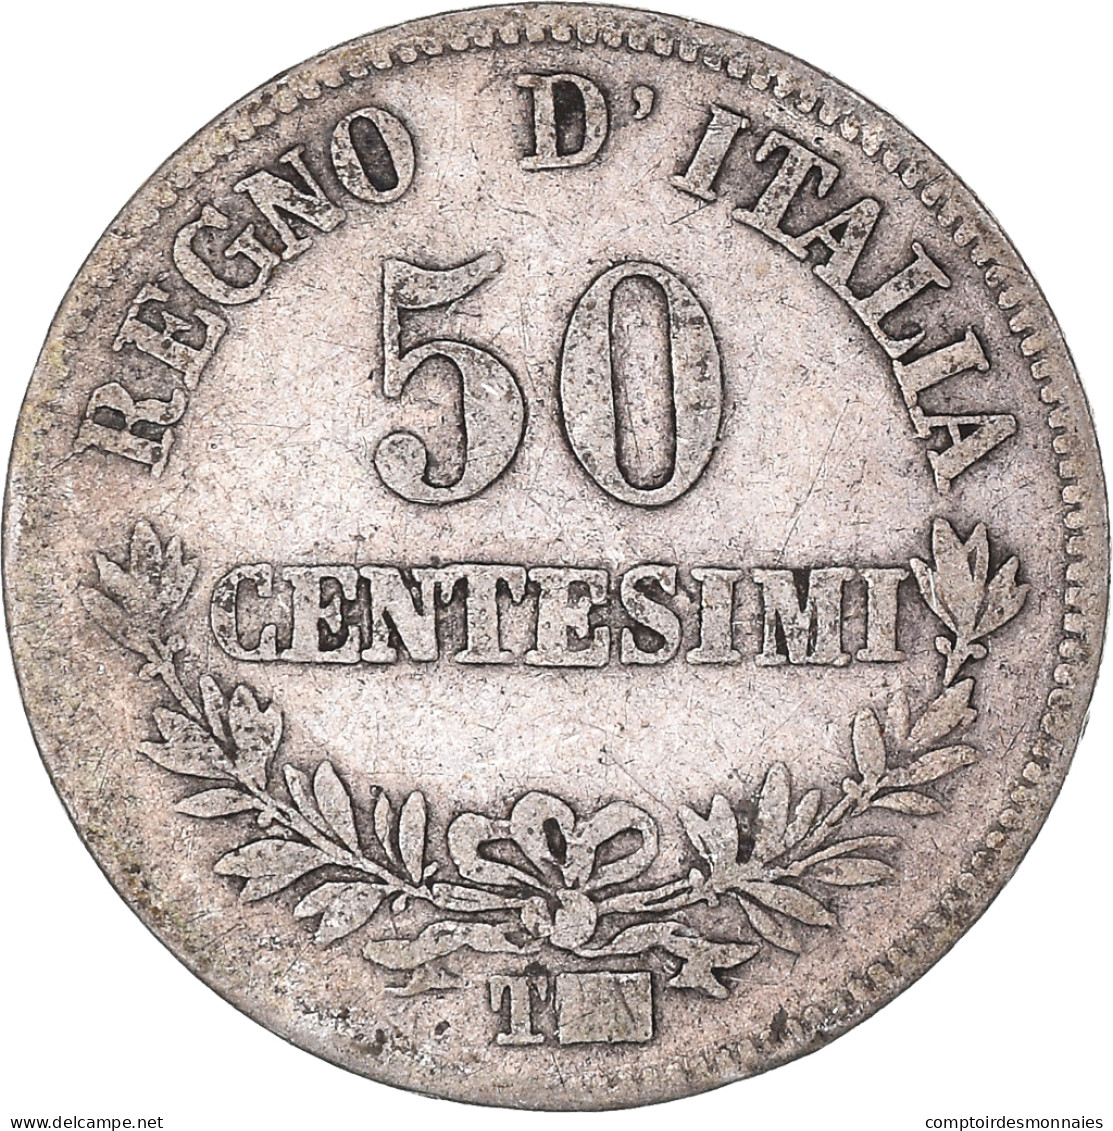 Monnaie, Italie, Vittorio Emanuele II, 50 Centesimi, 1863, Torino, TB+, Argent - 1861-1878 : Vittoro Emanuele II